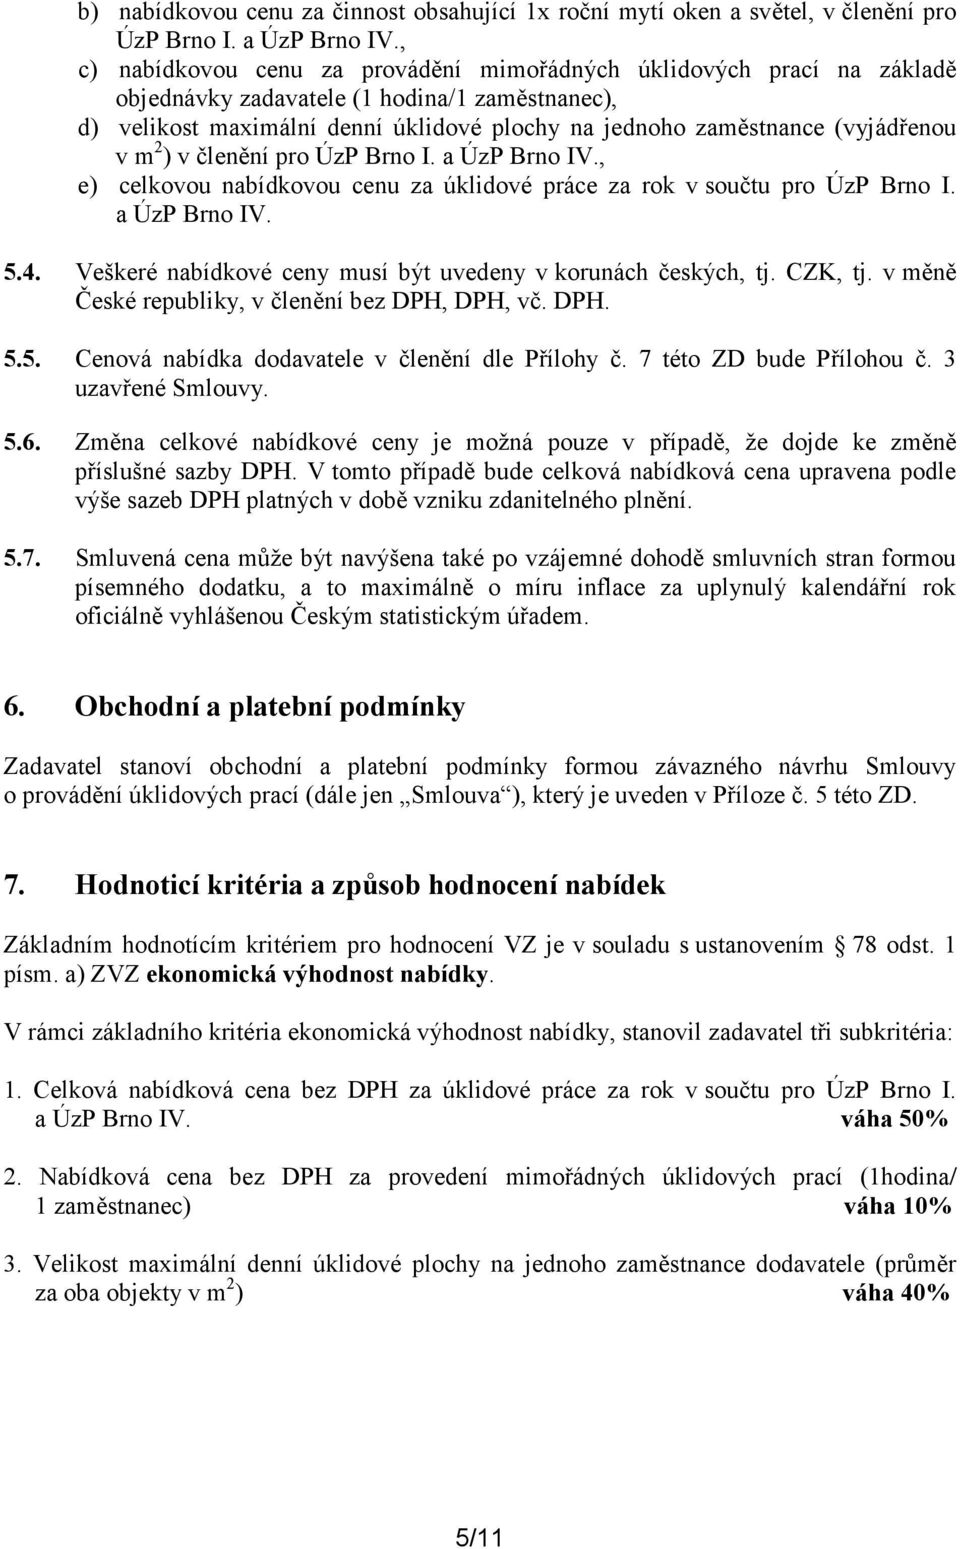 (vyjádřenou v m 2 ) v členění pro ÚzP Brno I. a ÚzP Brno IV., e) celkovou nabídkovou cenu za úklidové práce za rok v součtu pro ÚzP Brno I. a ÚzP Brno IV. 5.4.